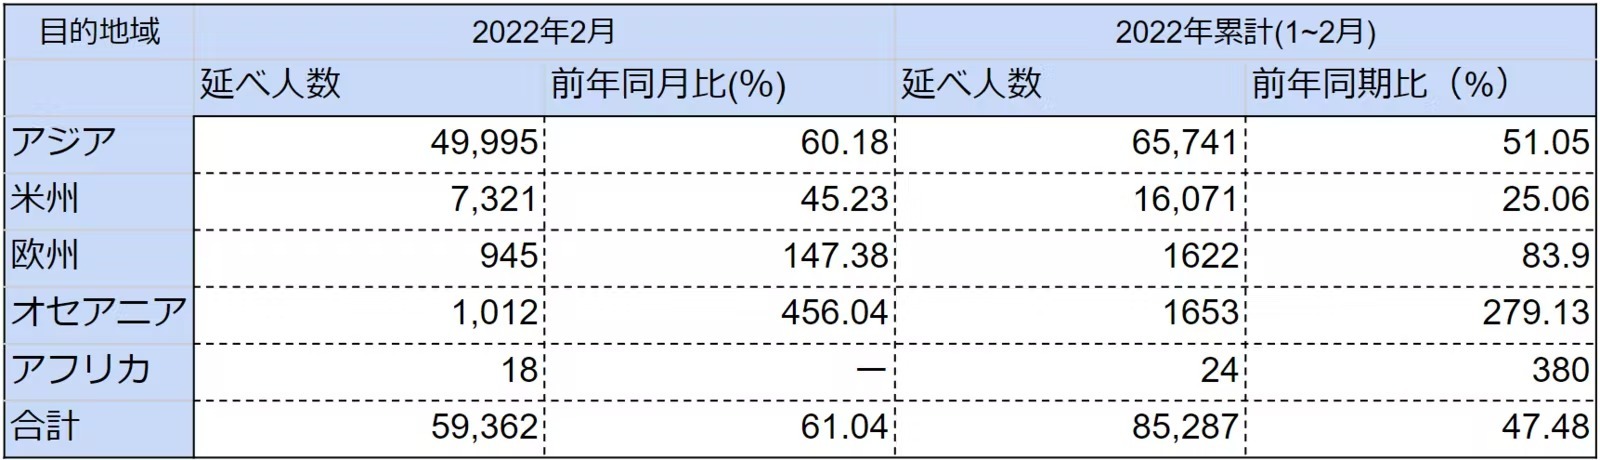 2月 台湾の出境者数、3か月連続のプラス成長を記録